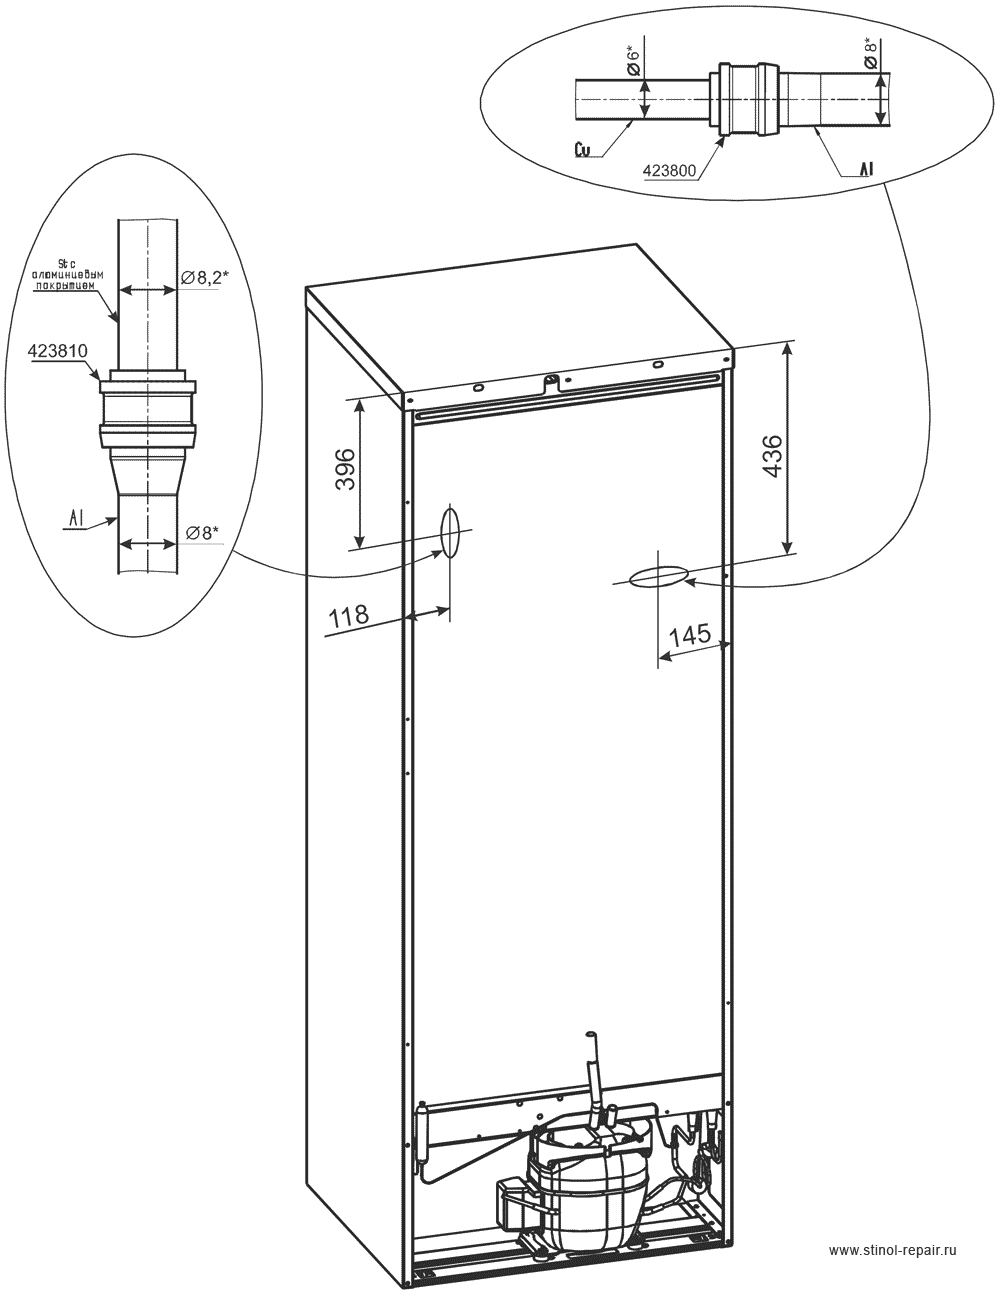 Расположение локринговых соединений холодильника Стинол-256Q - первоначальный вариант.